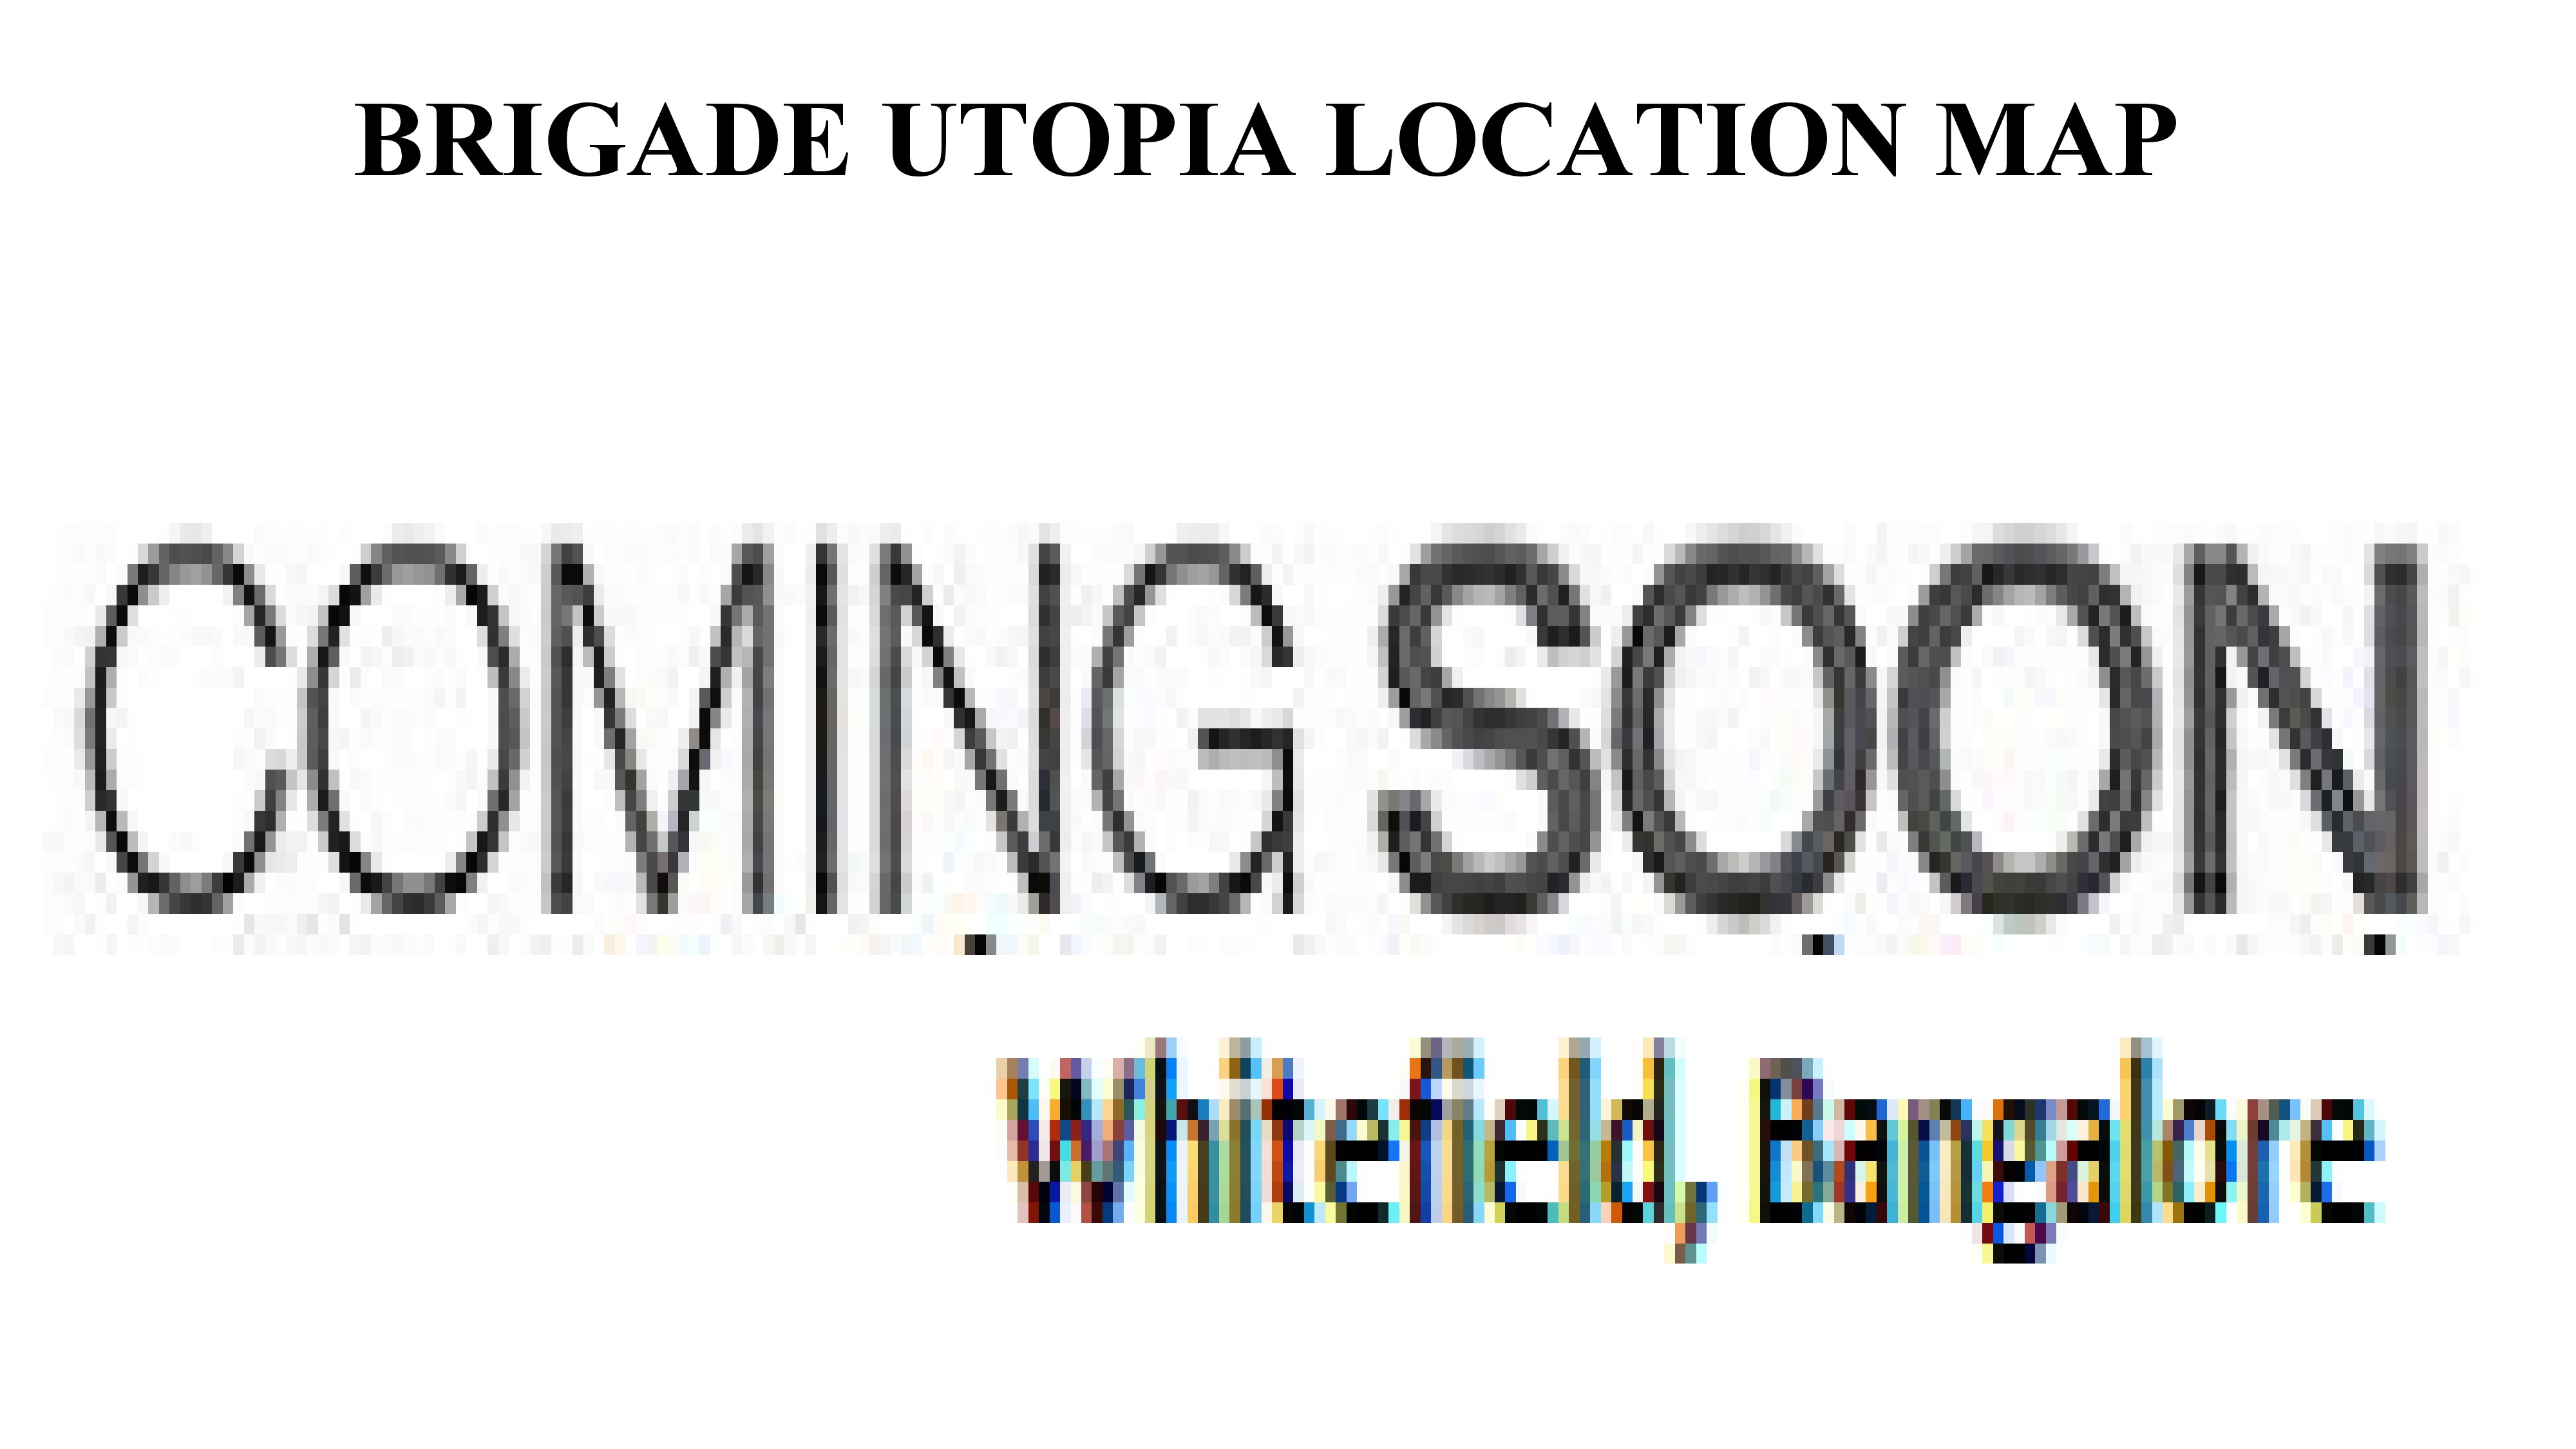 www.brigadeutopia.ind.in - Brigade Utopia Bangalore